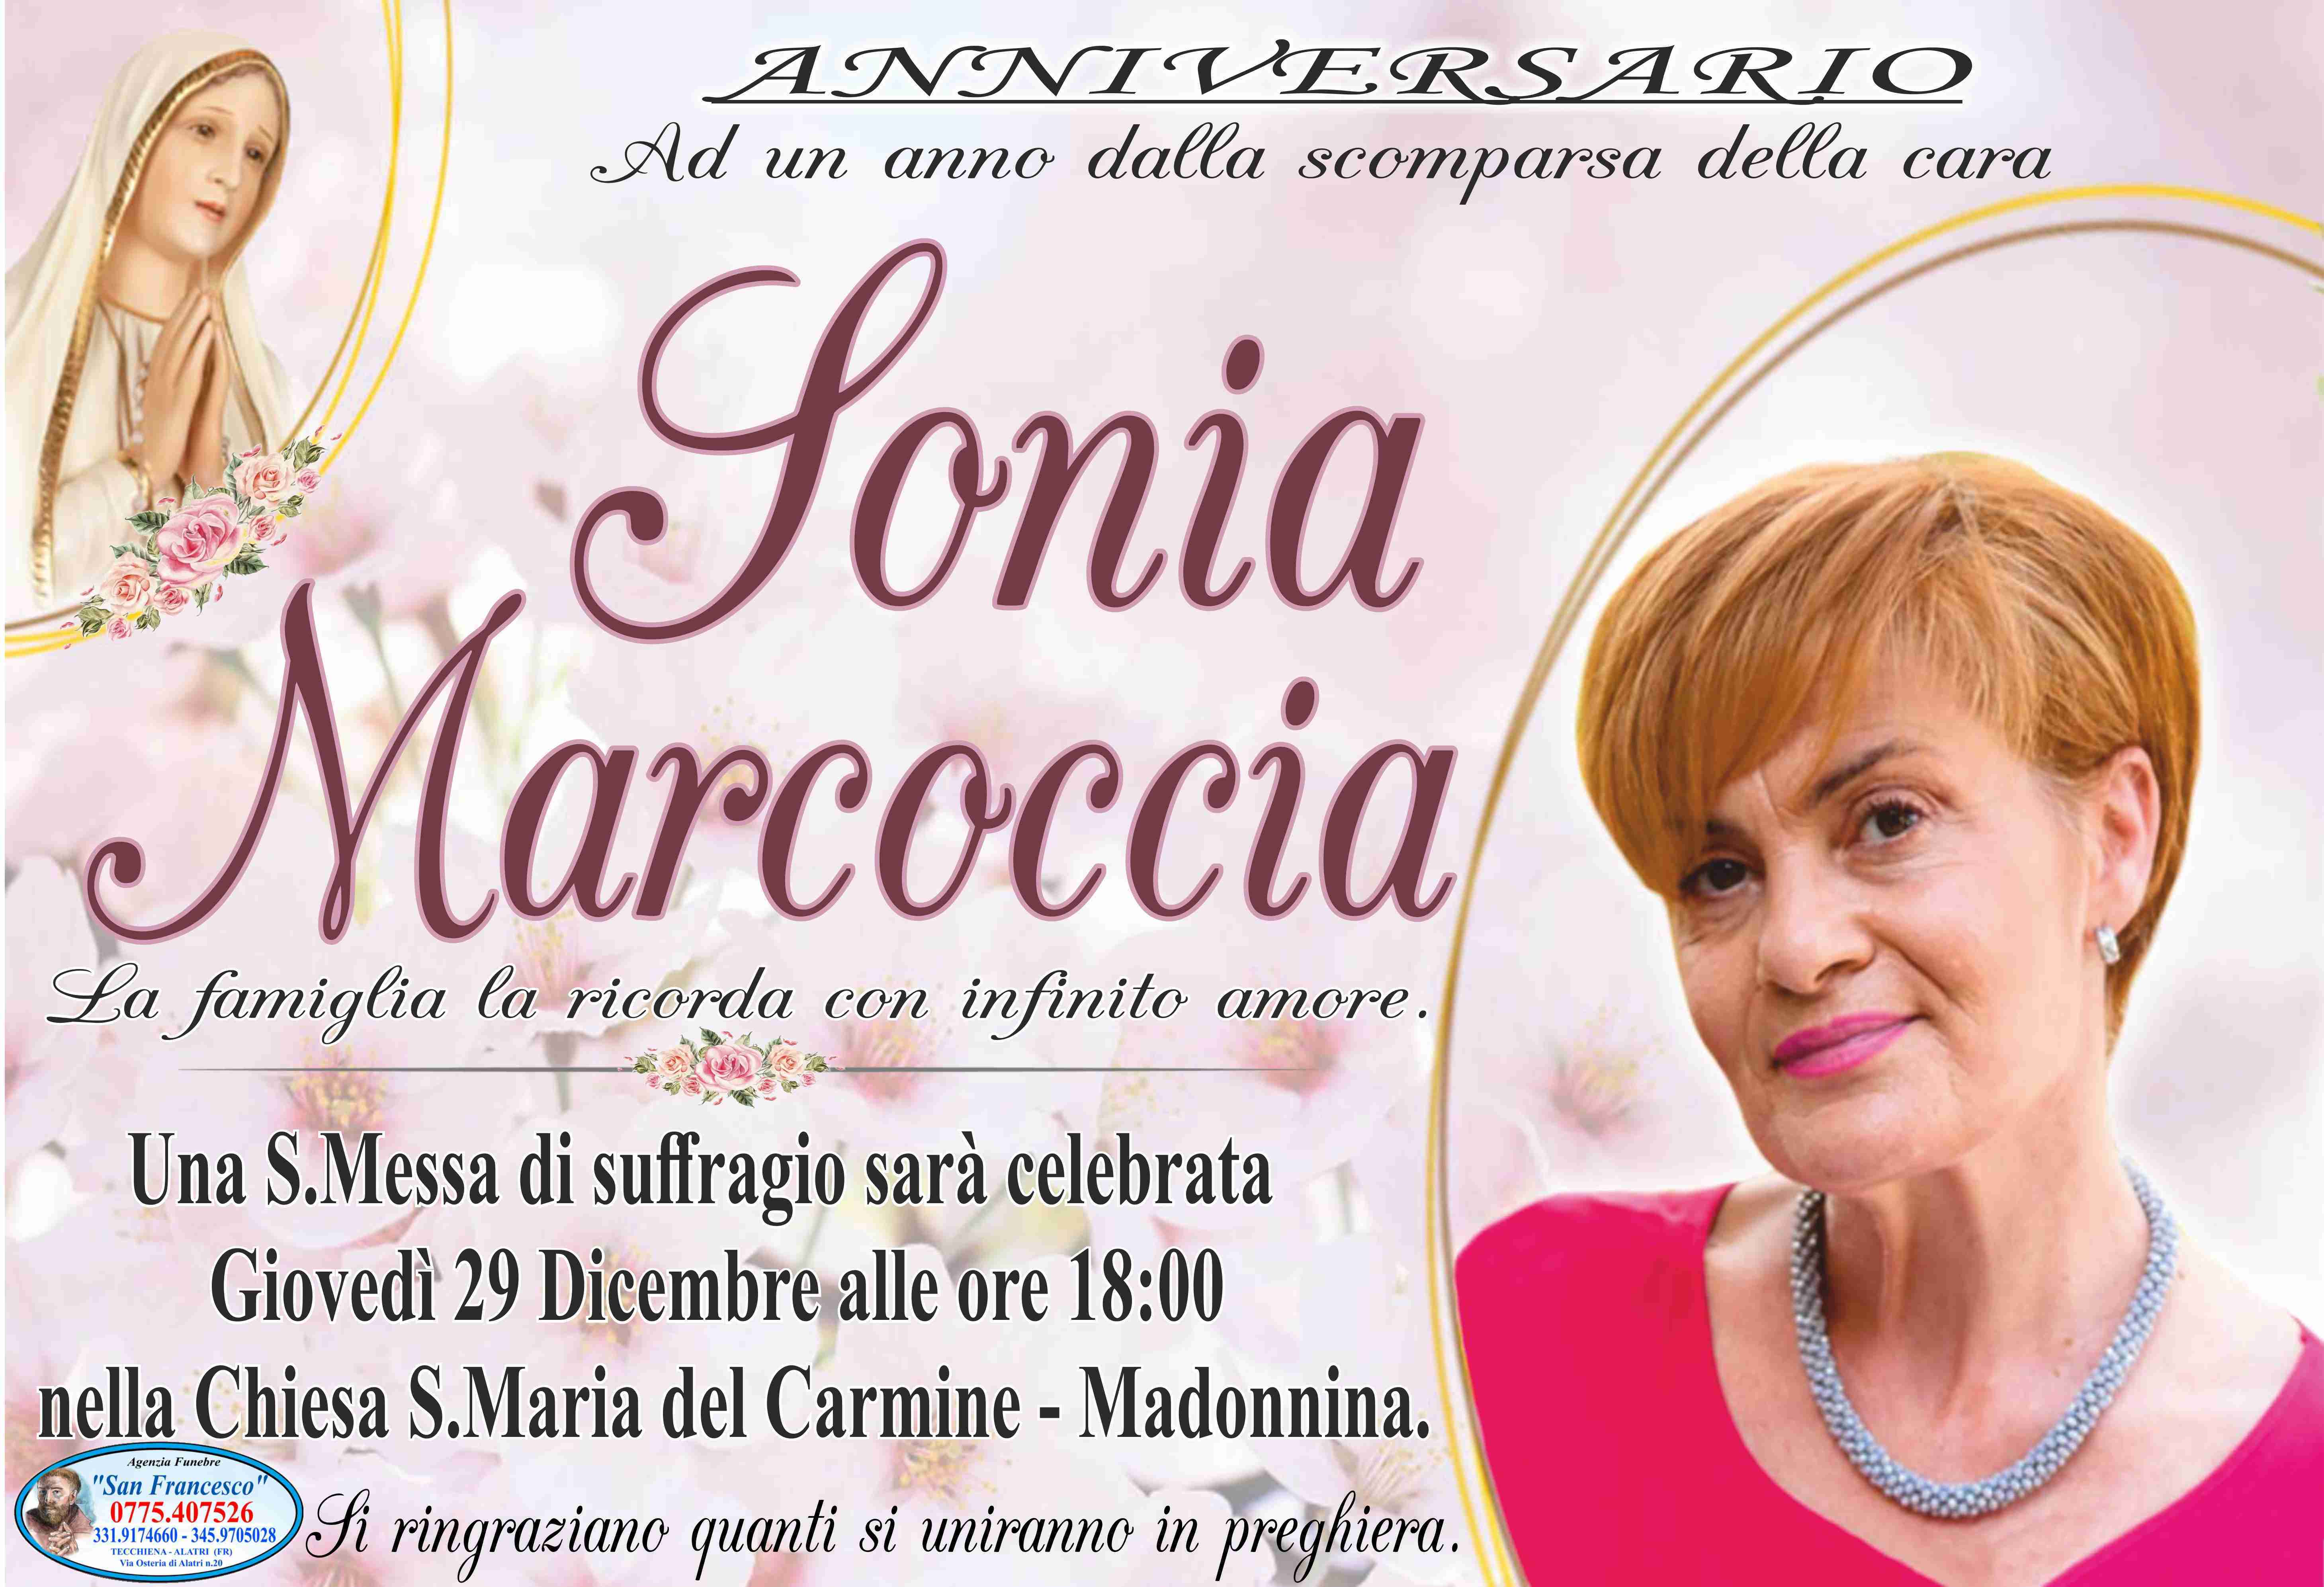 Sonia Marcoccia